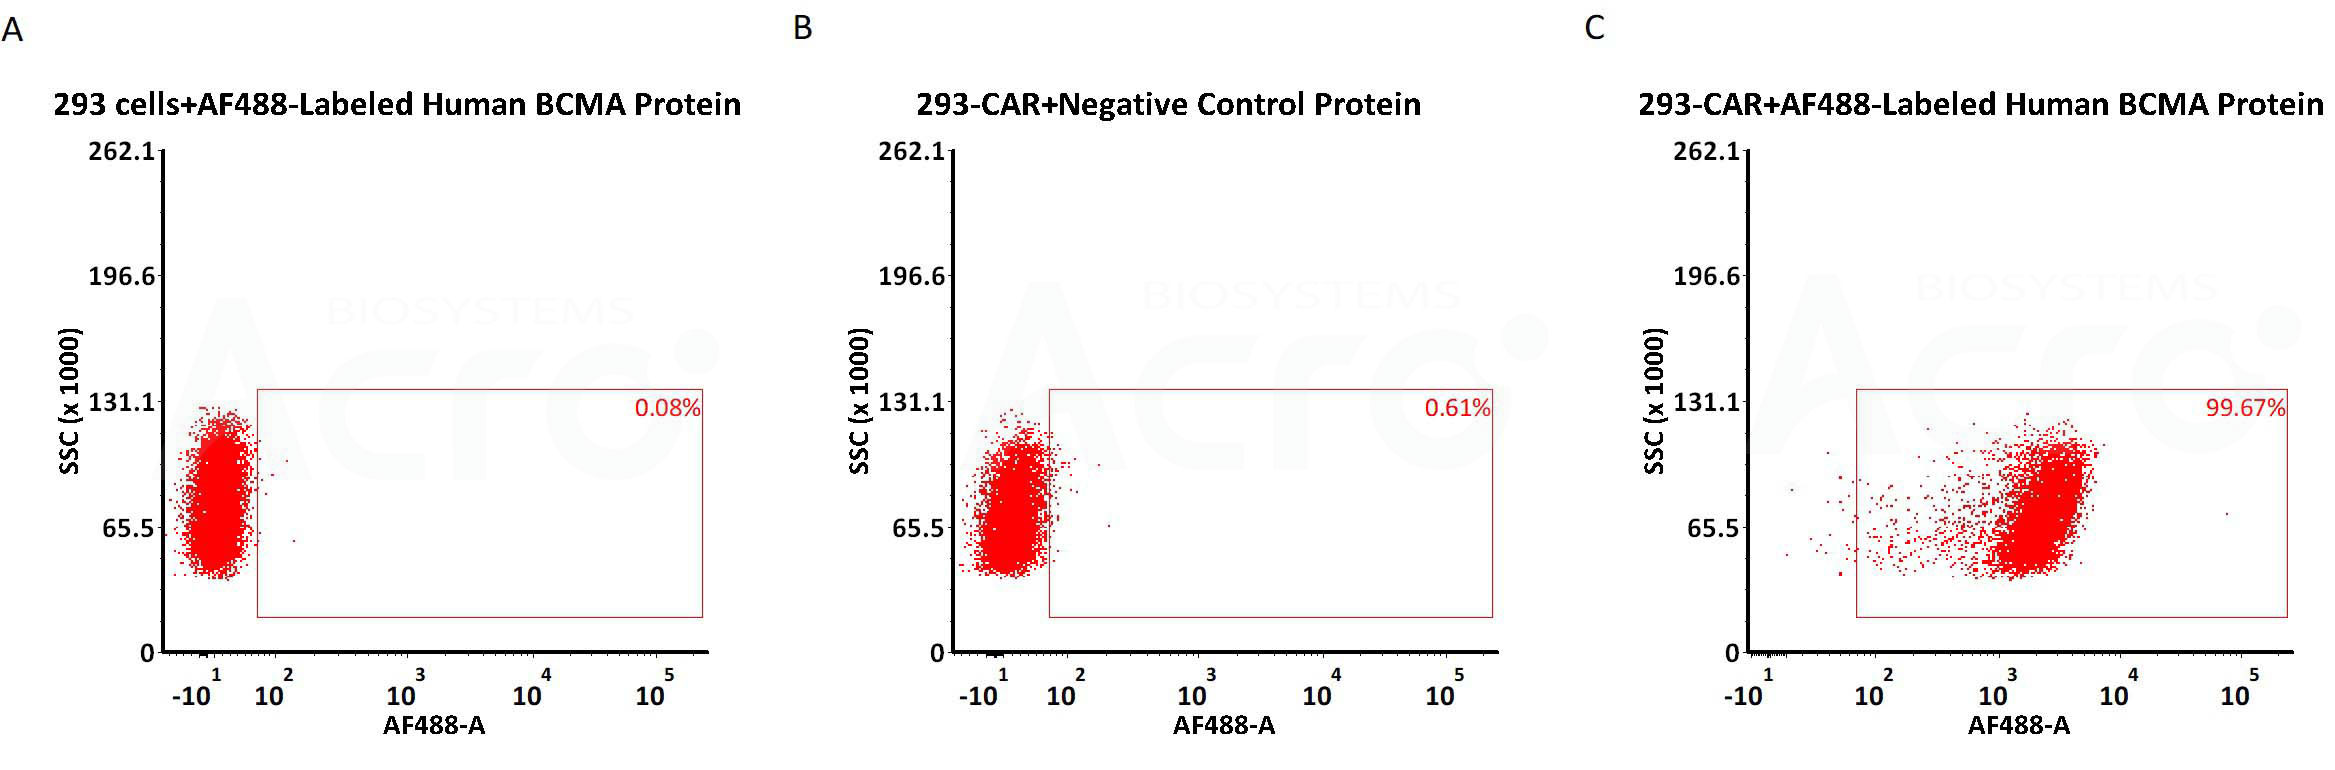 AF488荧光标记 BCMA蛋白可高活性检测BCMA CAR表达